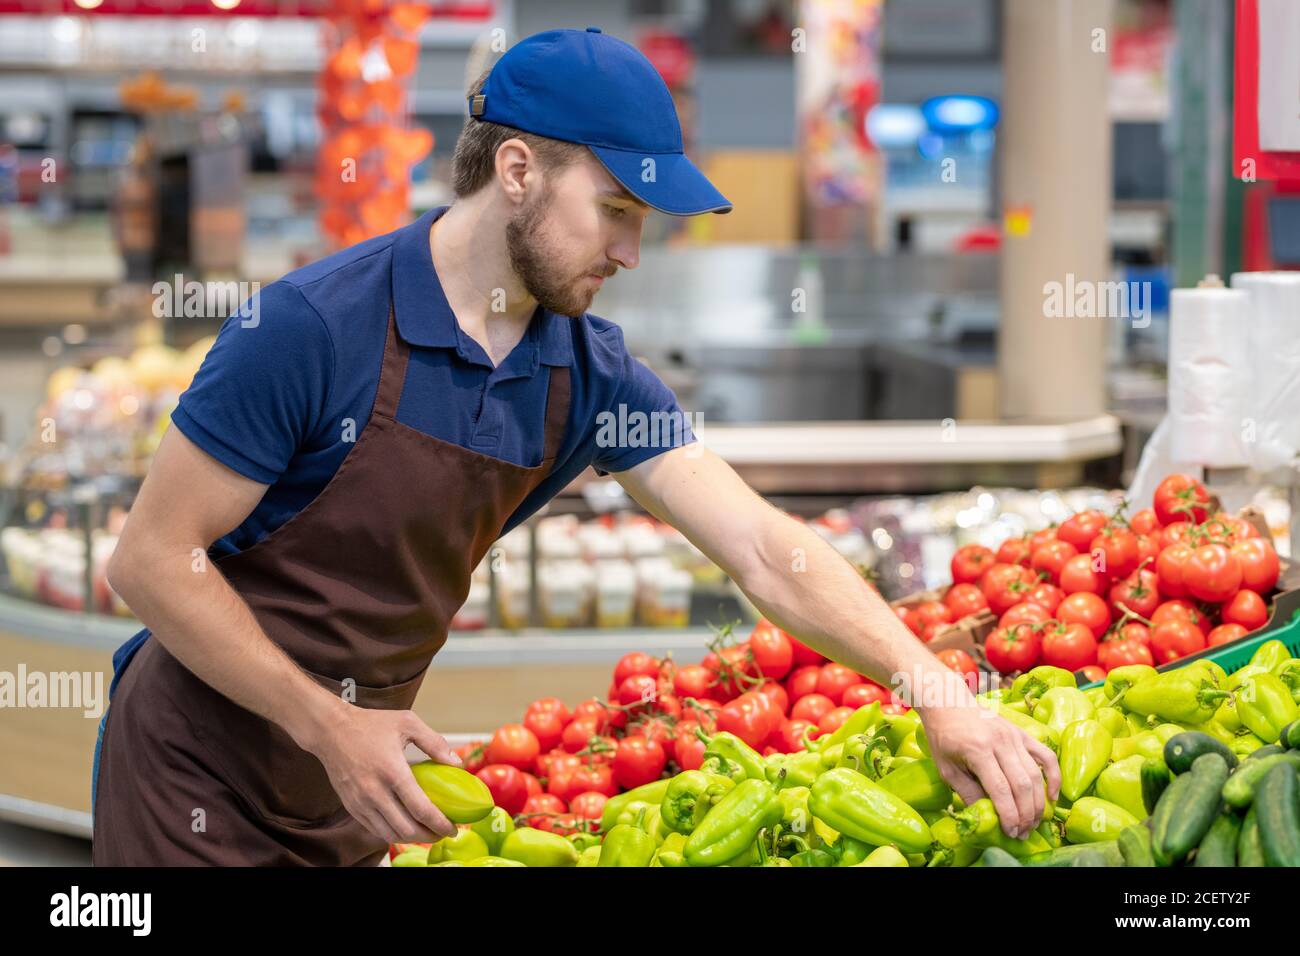 Moderno operaio di supermercato che indossa uniforme che stabilisce verdure fresche, tiro orizzontale medio, spazio di copia Foto Stock